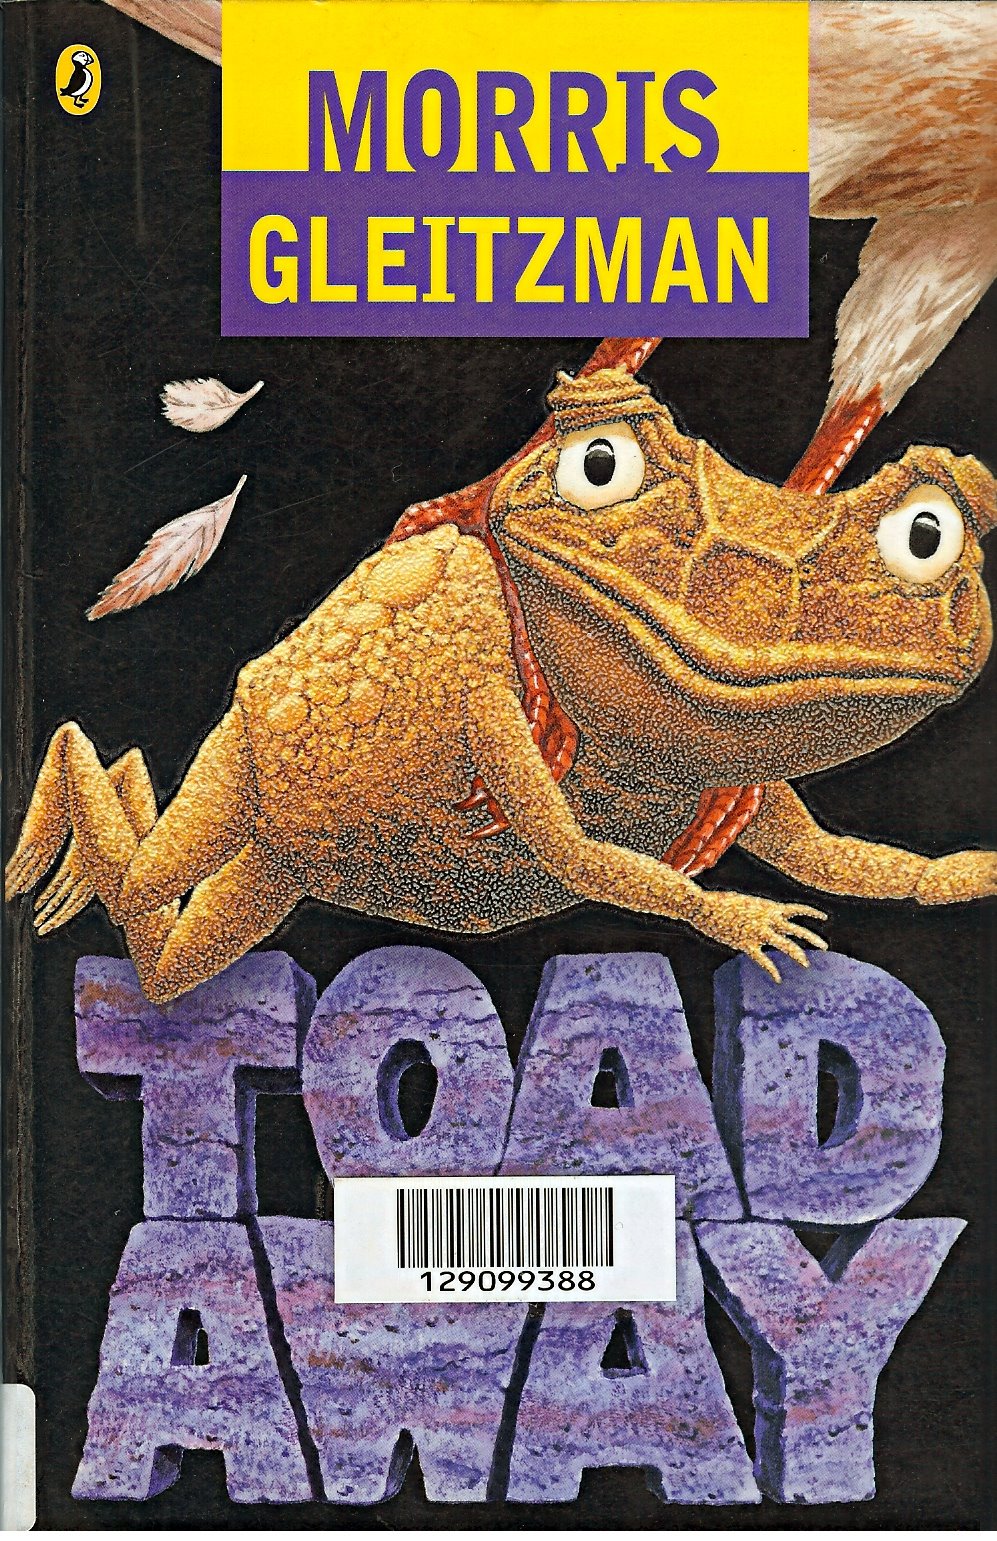 [Toad+Away.jpg]